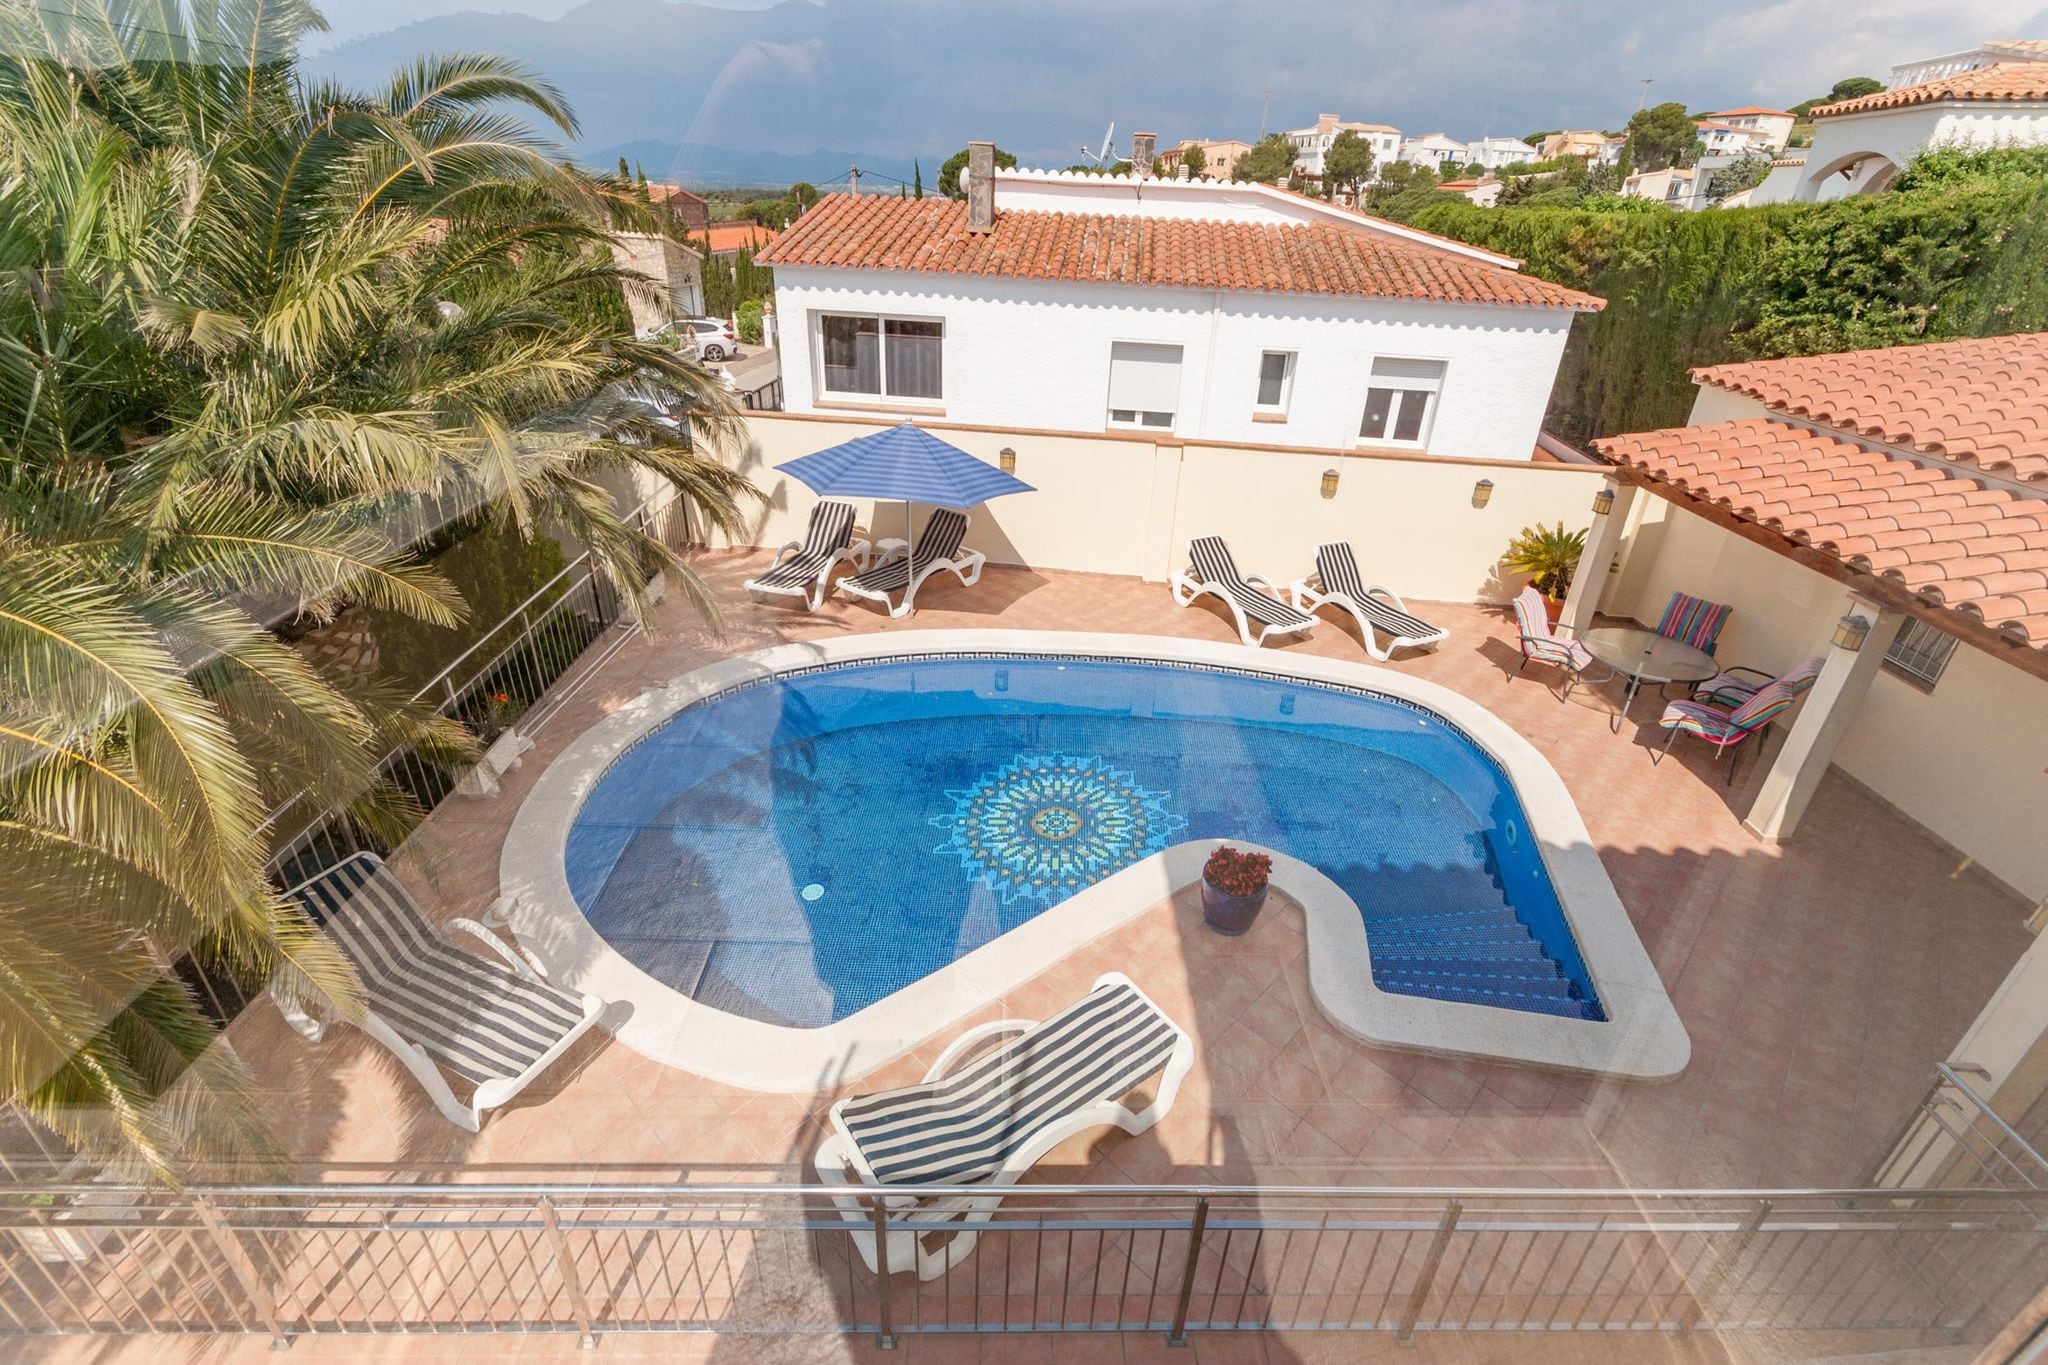 Moderne villa en studio in Roses met privézwembad en  uitzicht op de baai van Roses  (8 tot 10 pers)